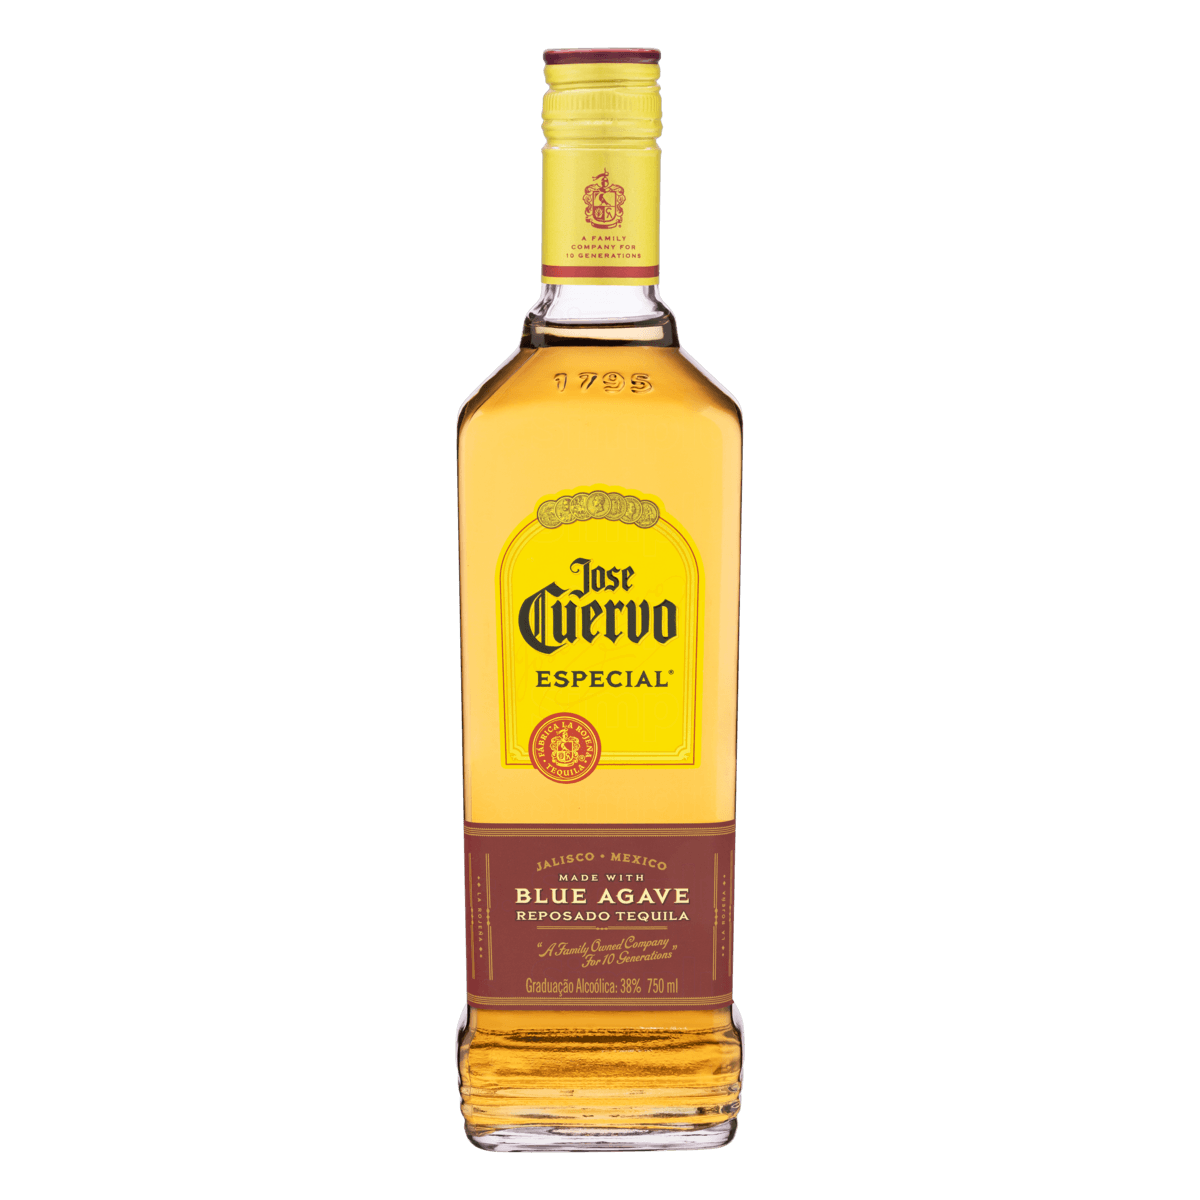 Tequila Jose Cuervo Especial Reposado 750ml Aurora Fine Brands 0284